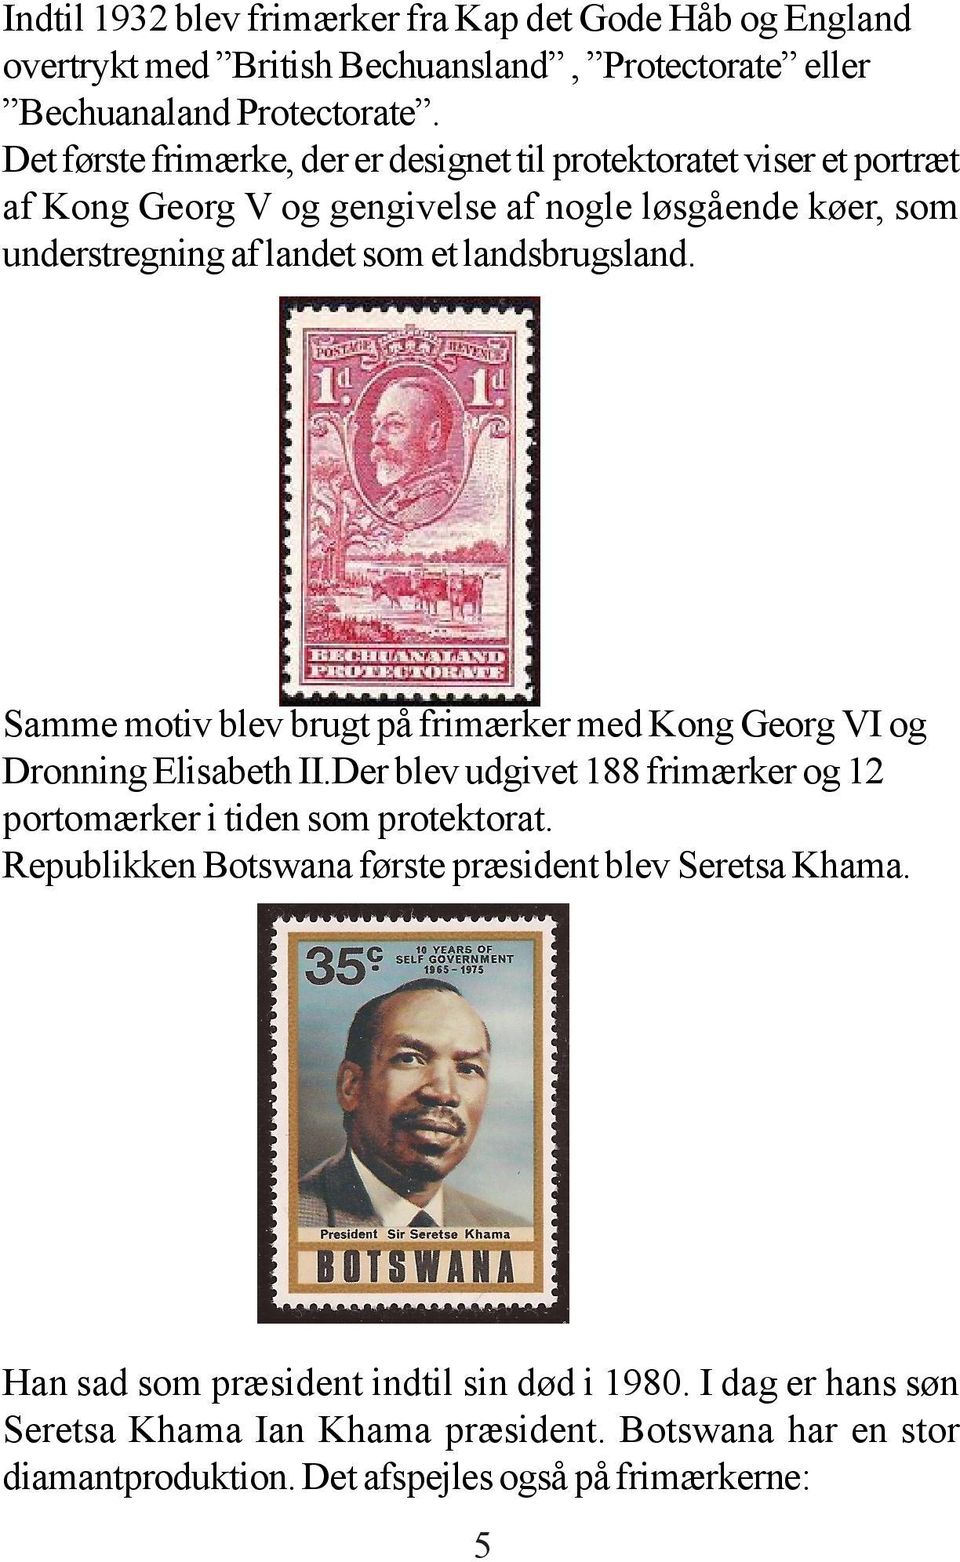 landsbrugsland. Samme motiv blev brugt på frimærker med Kong Georg VI og Dronning Elisabeth II.Der blev udgivet 188 frimærker og 12 portomærker i tiden som protektorat.